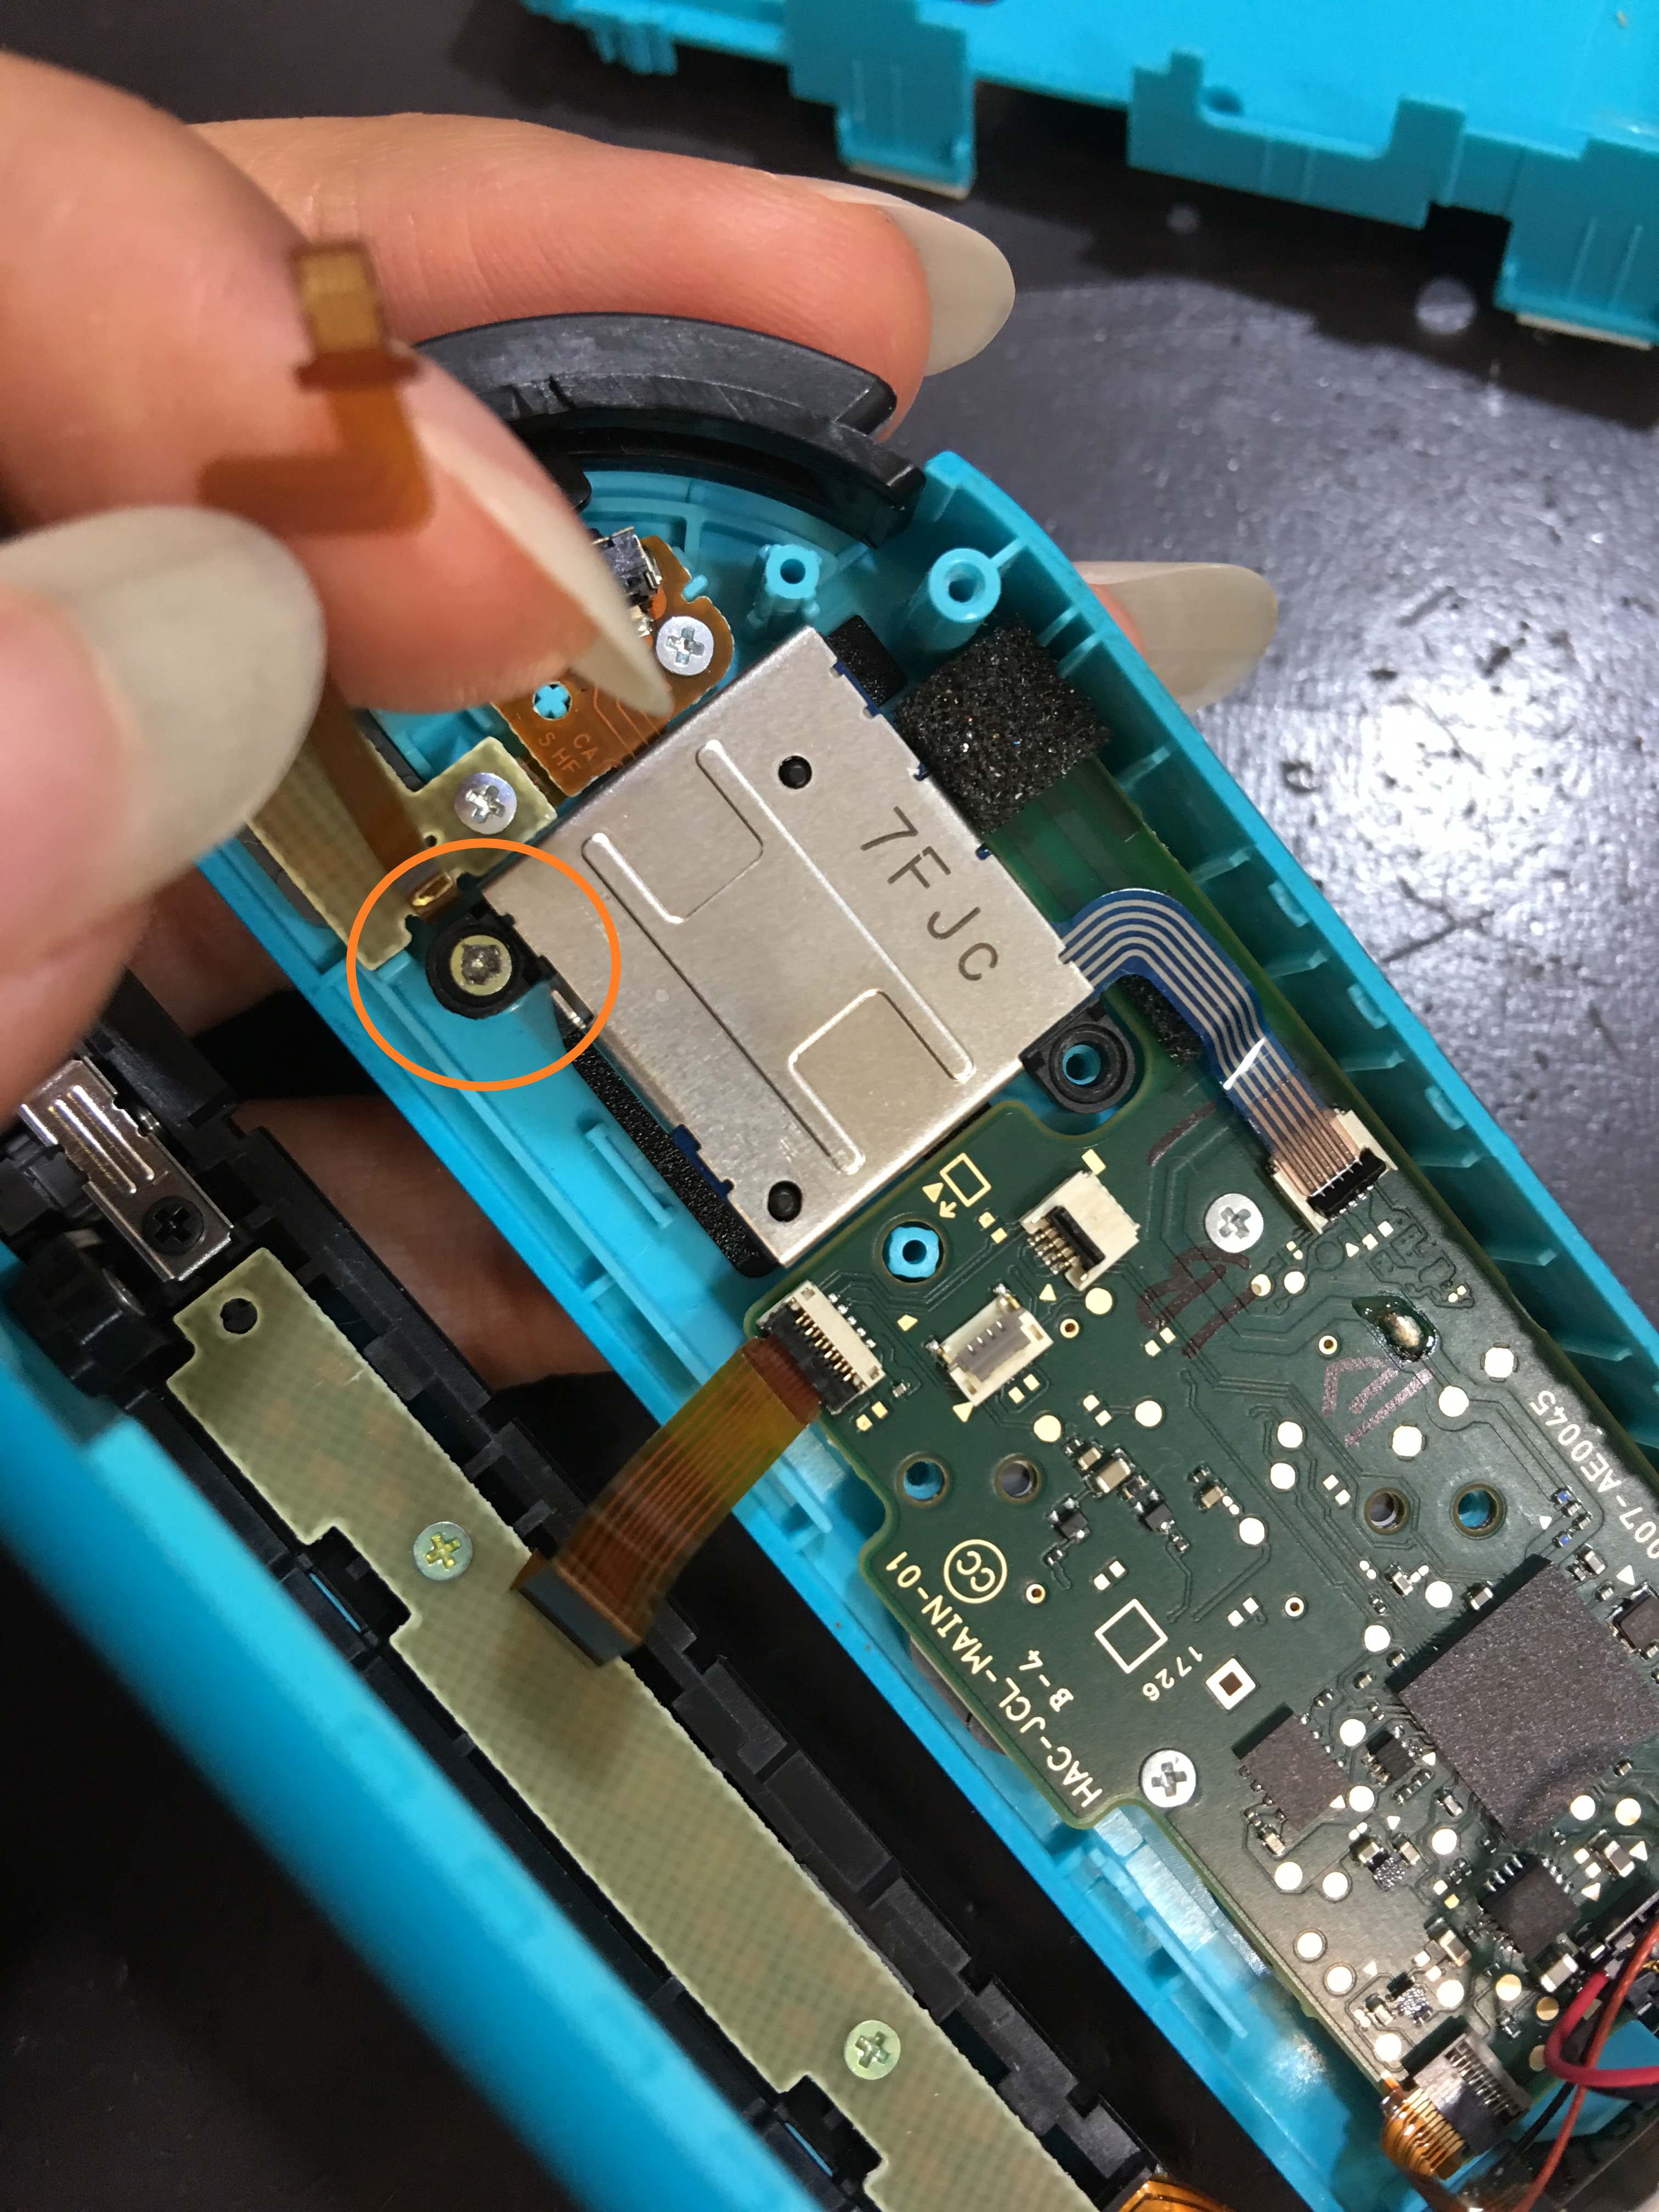 ゲーム機の自己分解時 ネジのなめりに要注意 Nintendo3ds Switch Psp 修理のゲームホスピタル Nintendo3ds ニンテンドーds Psp Switch 修理